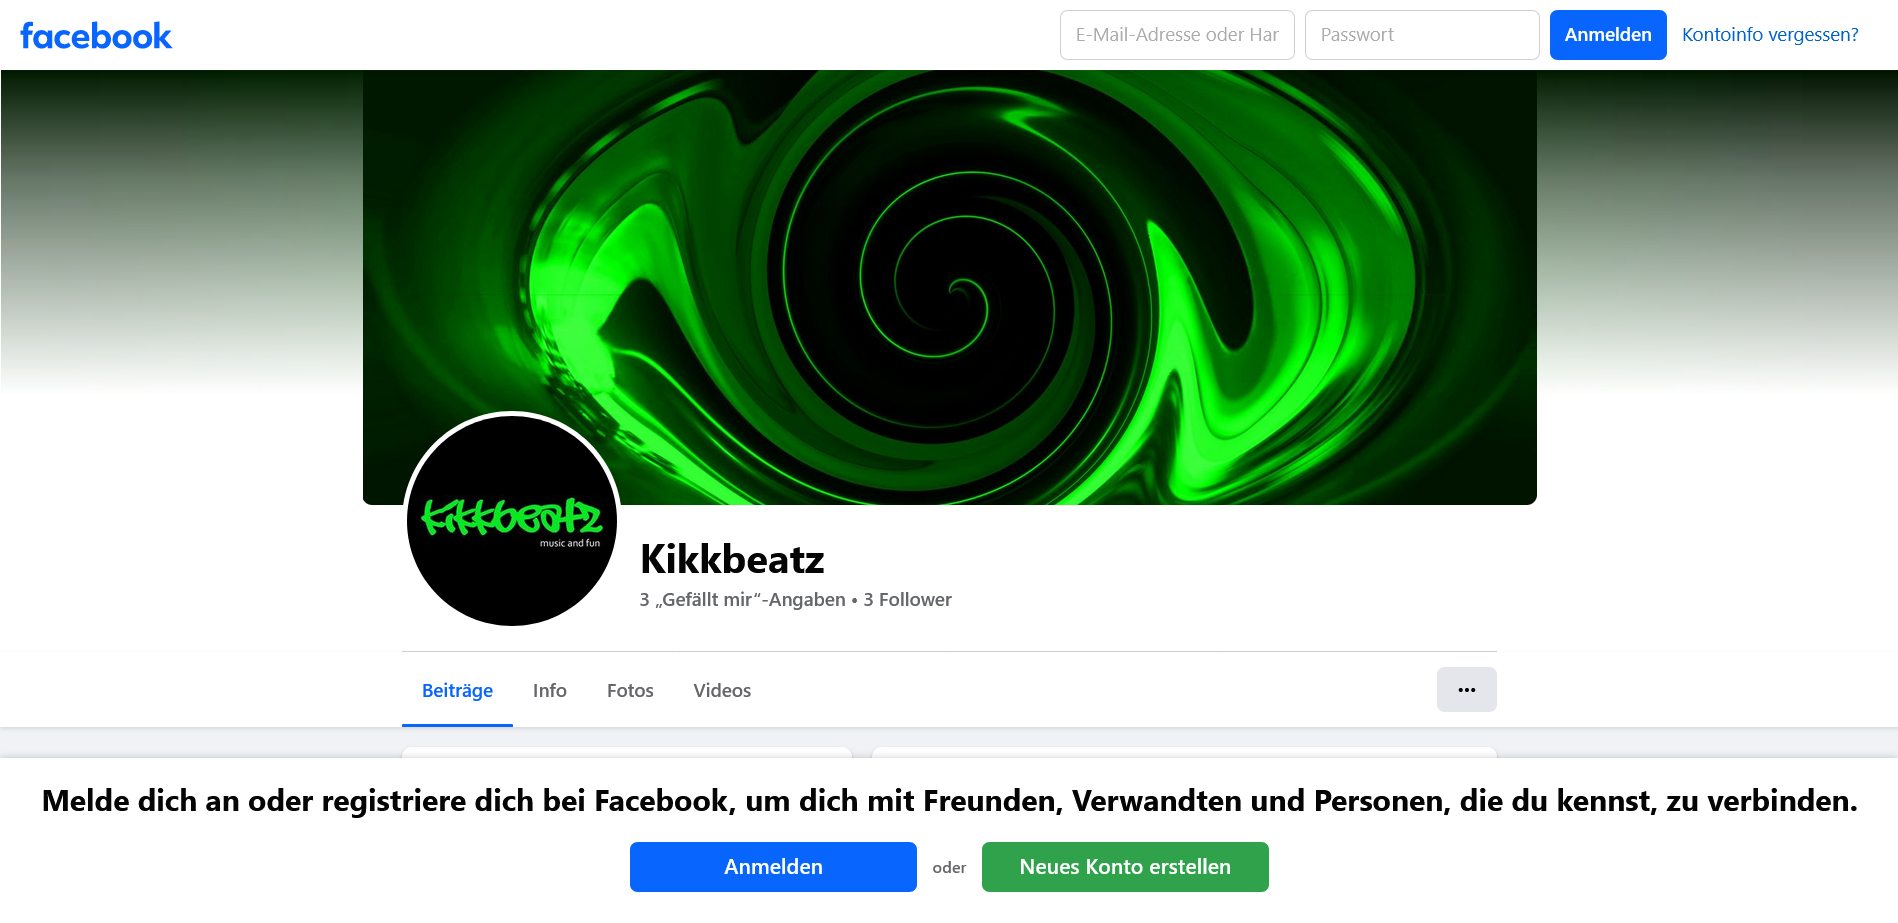 kikkbeatz on facebook